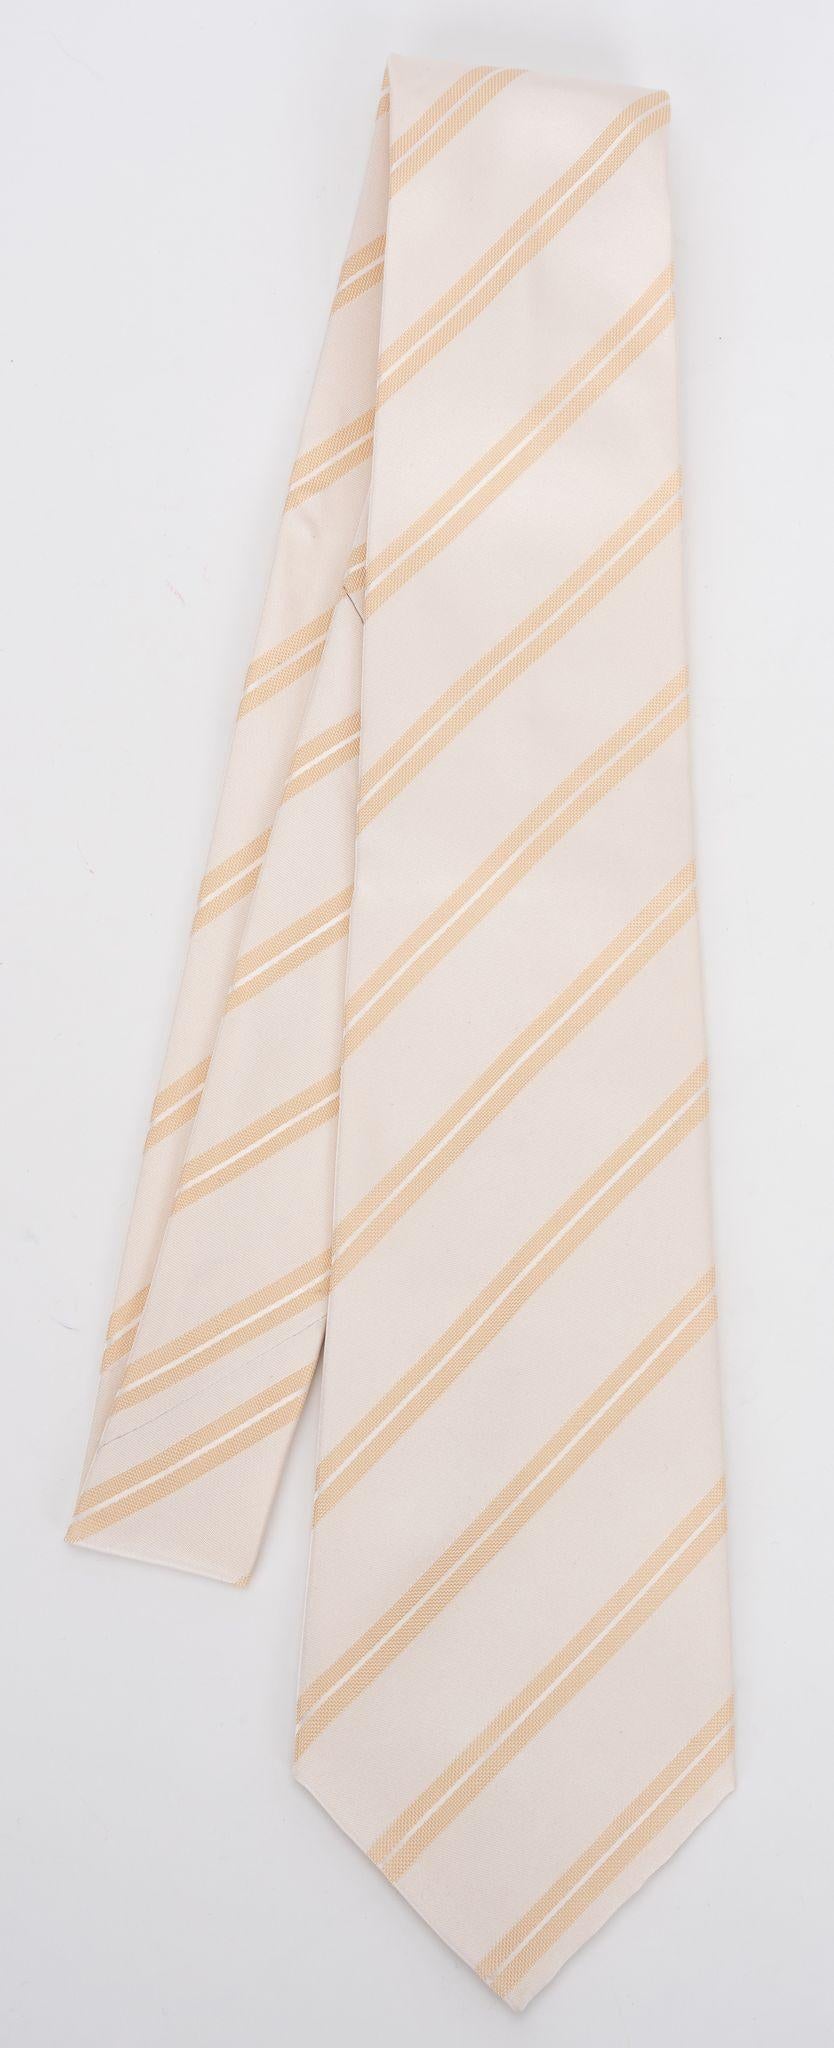 Cravate neuve 100% soie de Chanel, motif régimentaire crème. Label de composition, étiquette de marque et chaîne de signature. Livré avec l'enveloppe d'origine.